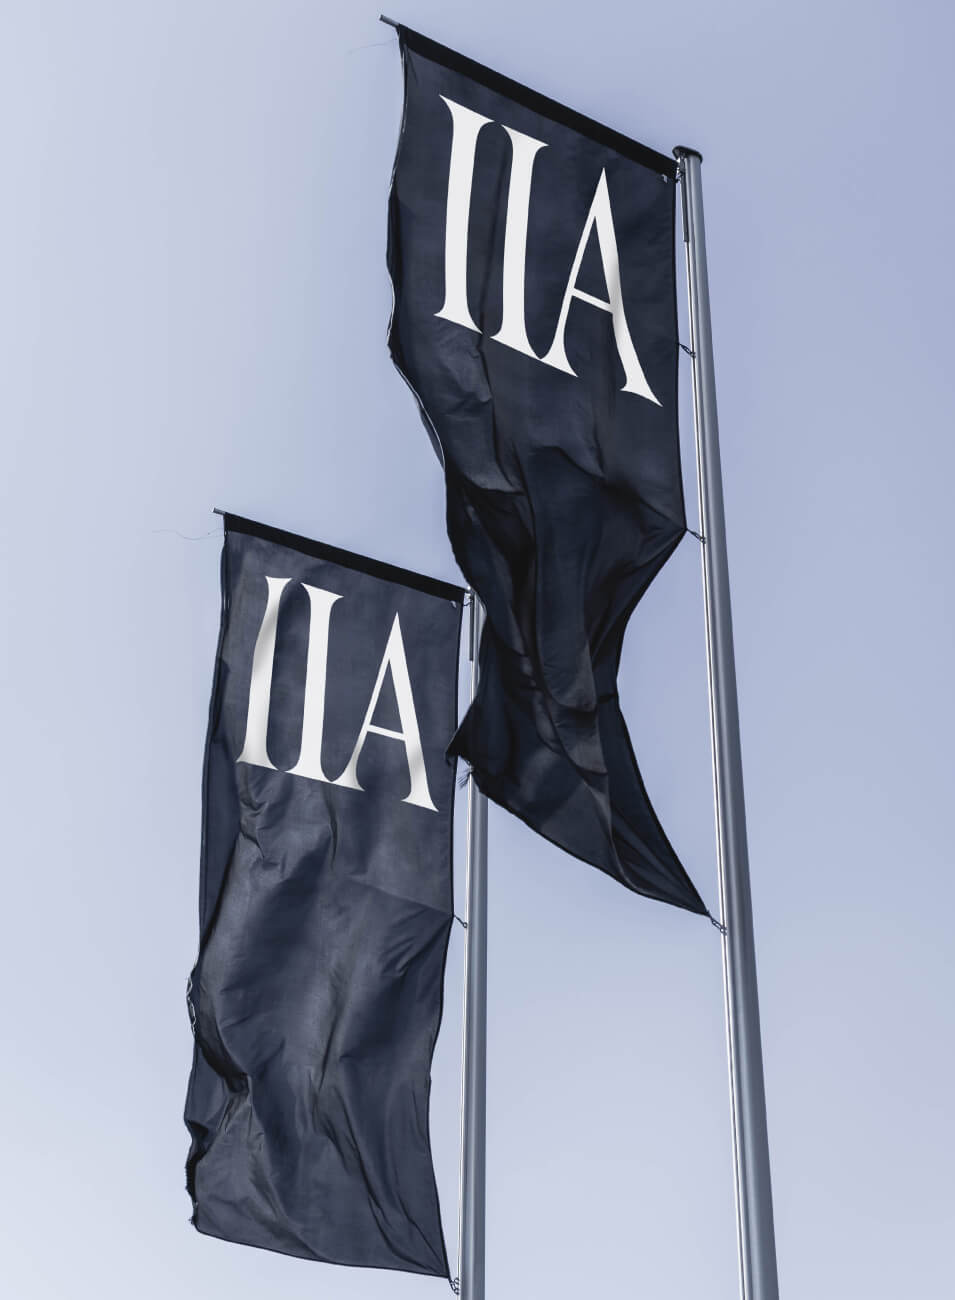 Banderas negras al viento con las letras IIA